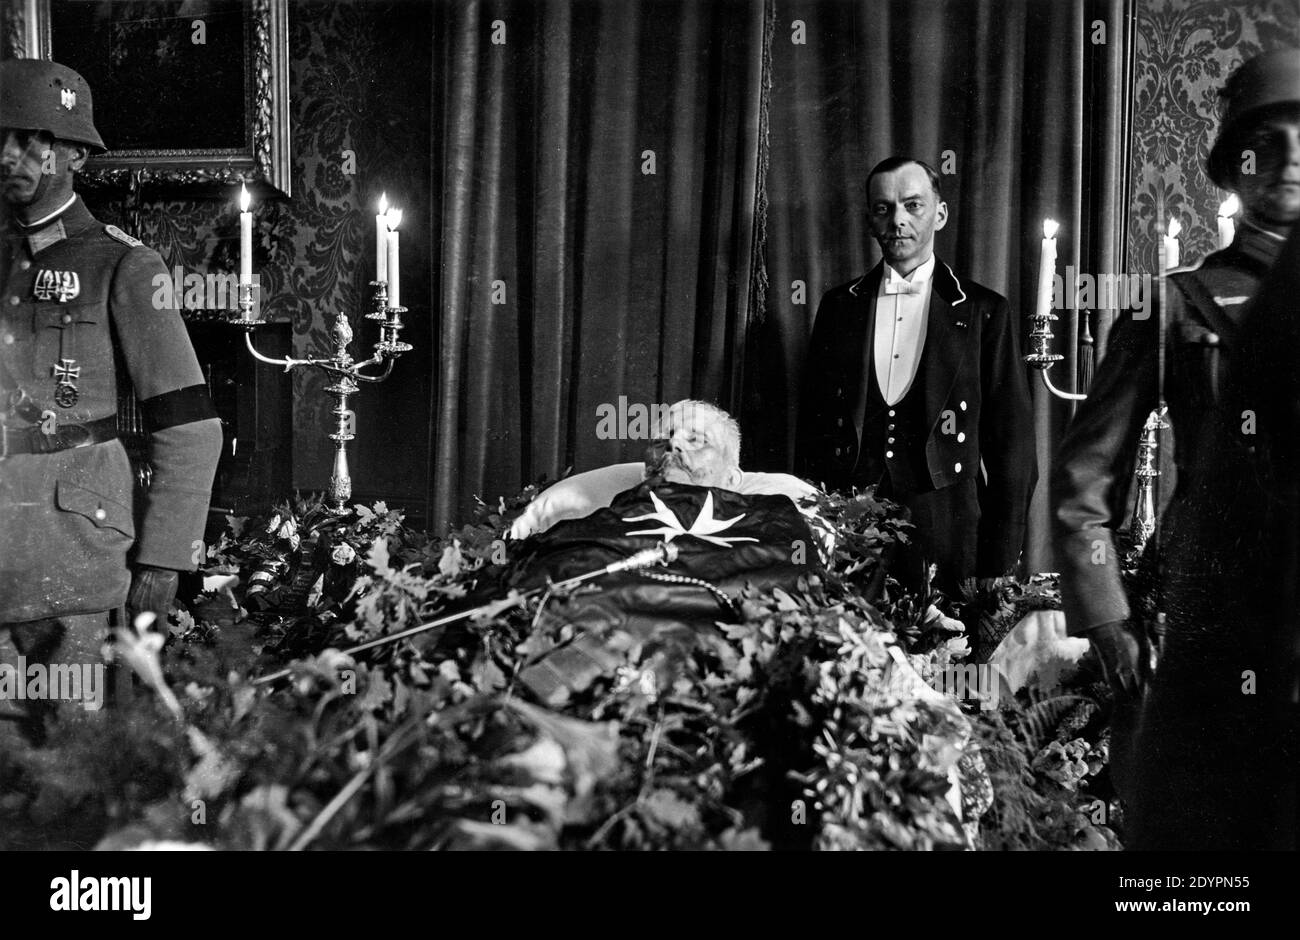 Paul von Hindenburg couché dans l'État, août 1934, derrière lui son valet Oskar Putz, Neudeck Manor House, Allemagne, aujourd'hui Pologne Banque D'Images